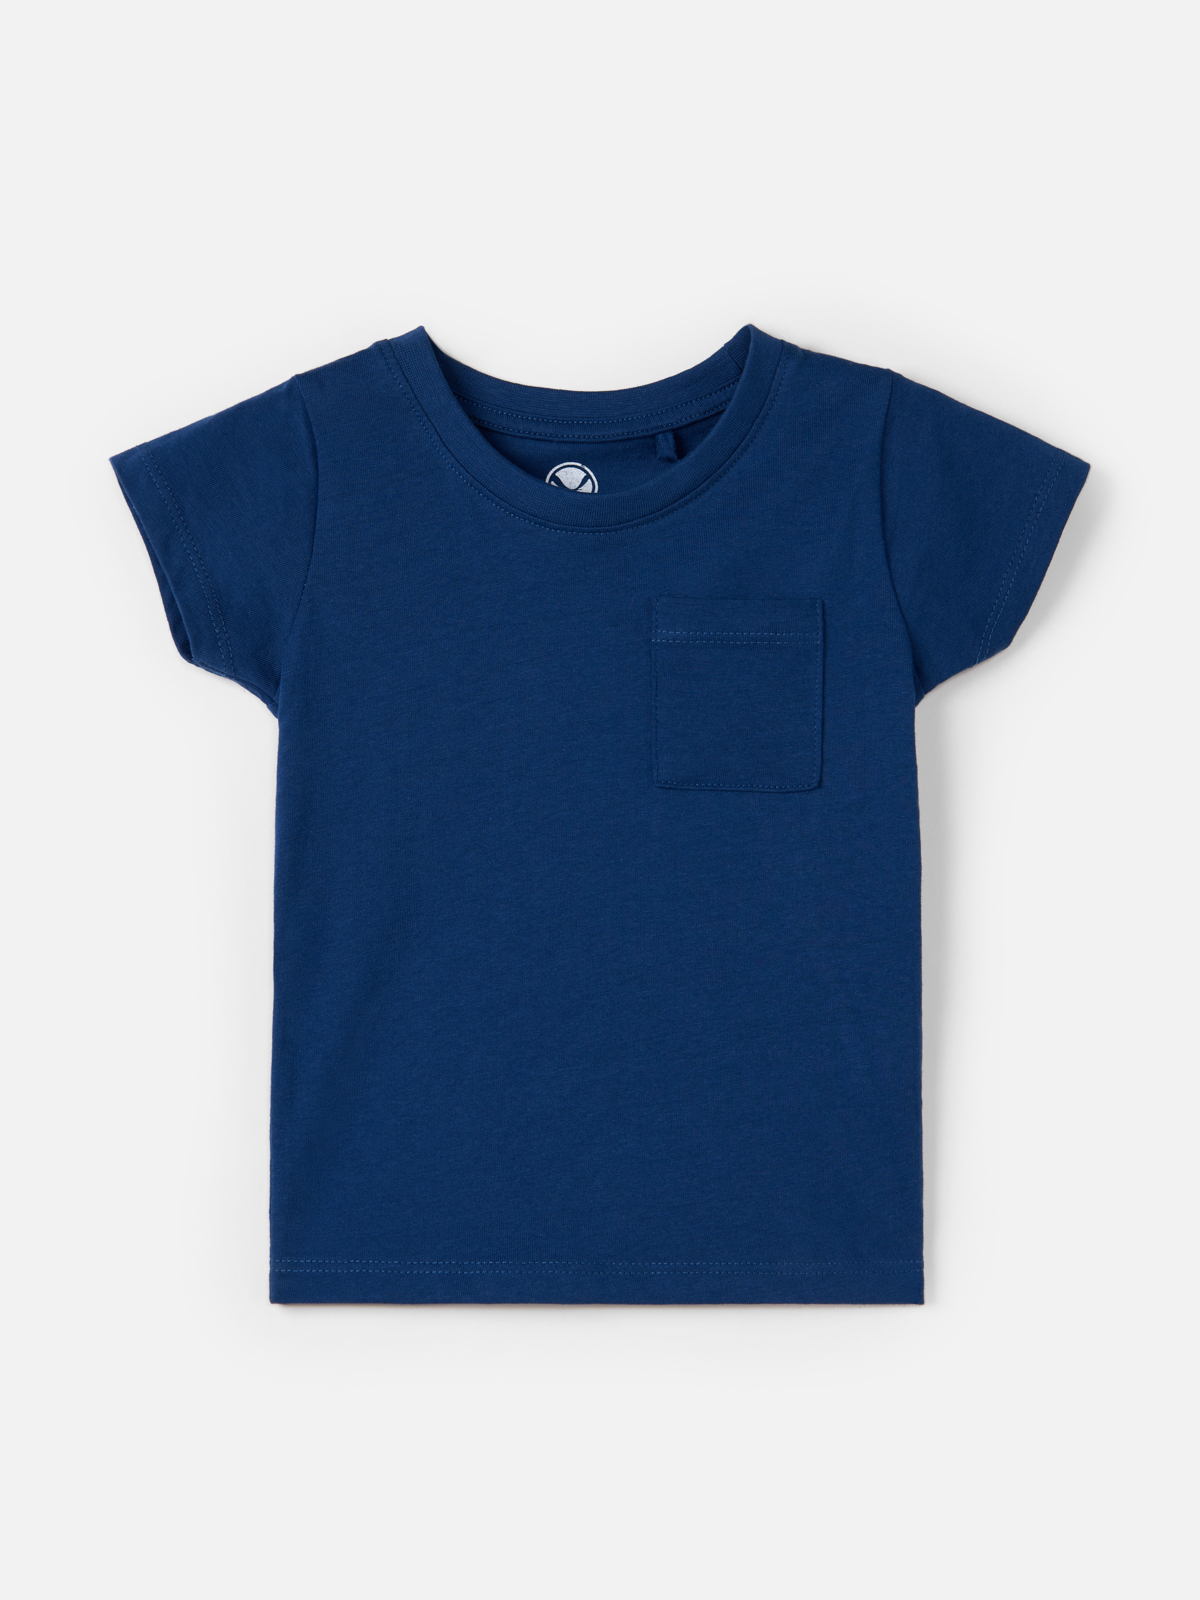 Футболка Harc Fashion для мальчиков, размер 122, HTC2306-001-Navy Blue футболка с коротким рукавом и дизайнерскими акцентами красная button blue 98